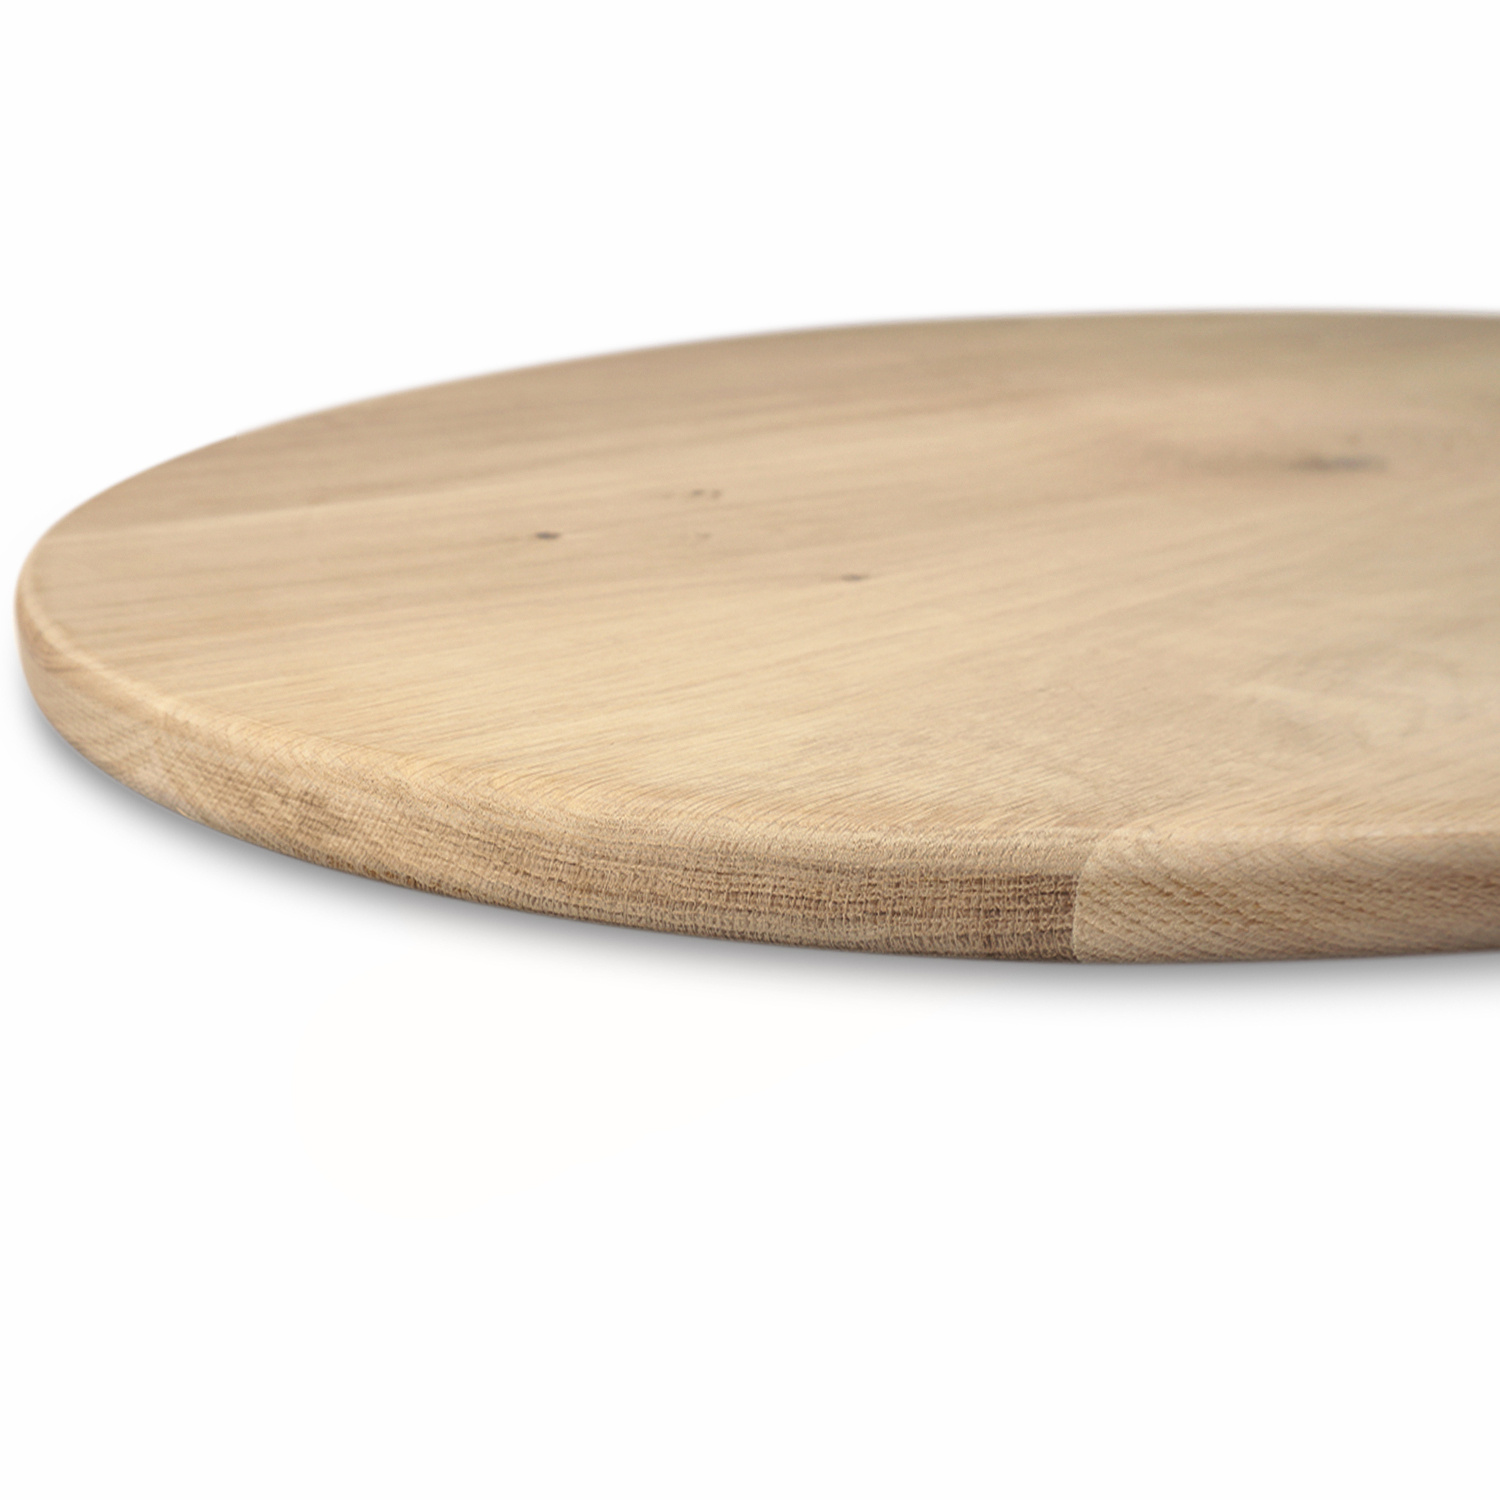  Rond eiken tafelblad op maat - 3 cm dik (1-laag) - extra rustiek Europees eikenhout - met extra brede lamellen (circa 14-20 cm) - verlijmd kd 8-12% - diameter van 40 tot 117 cm